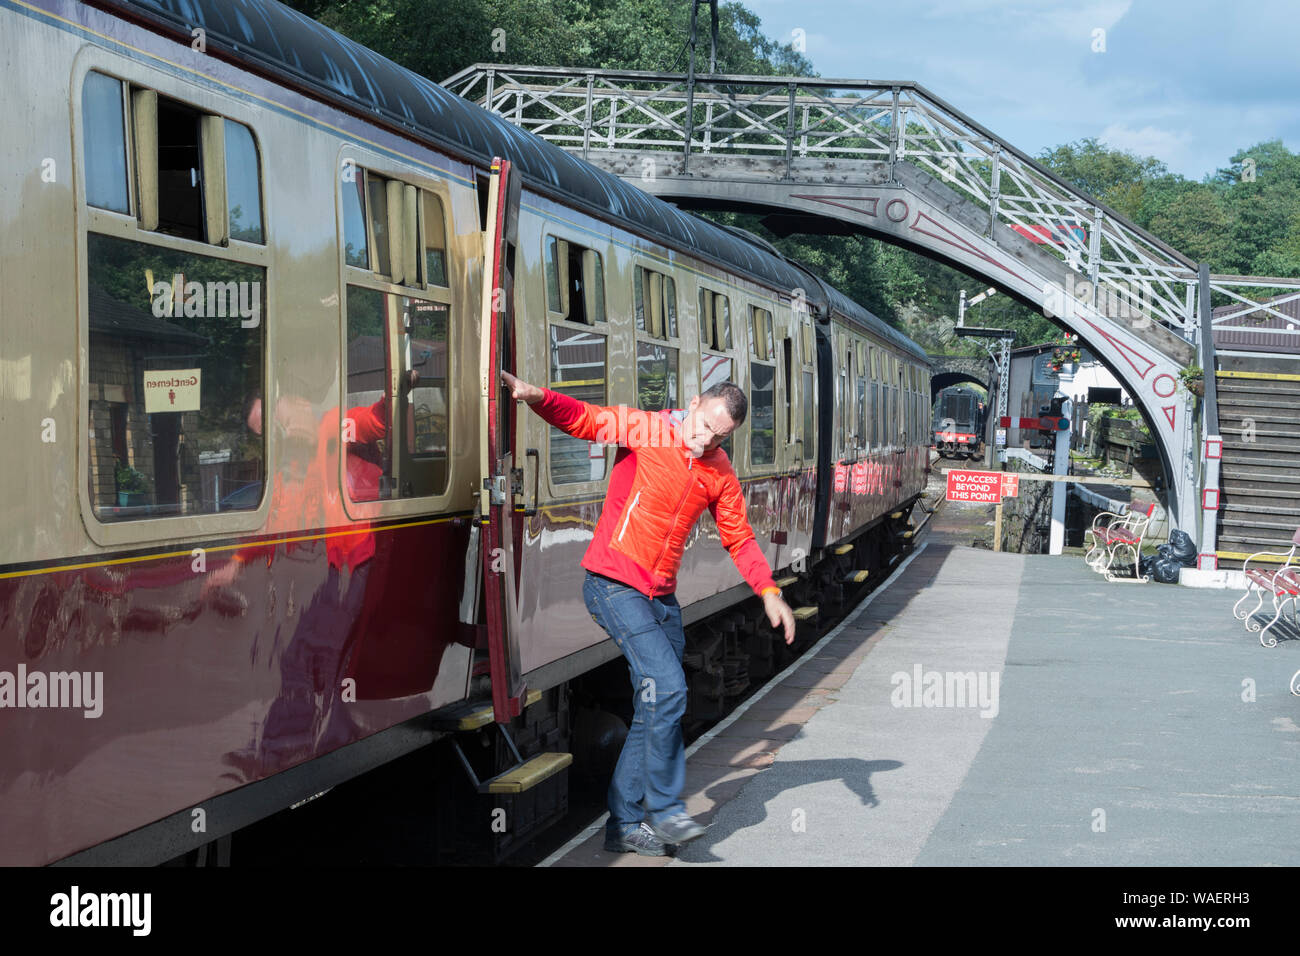 Uomo salta fuori da un treno alla stazione di Haverthwaite sul lungolago e Patrimonio Haverthwaite Railway vicino a Ulverston, Cumbria, Regno Unito Foto Stock